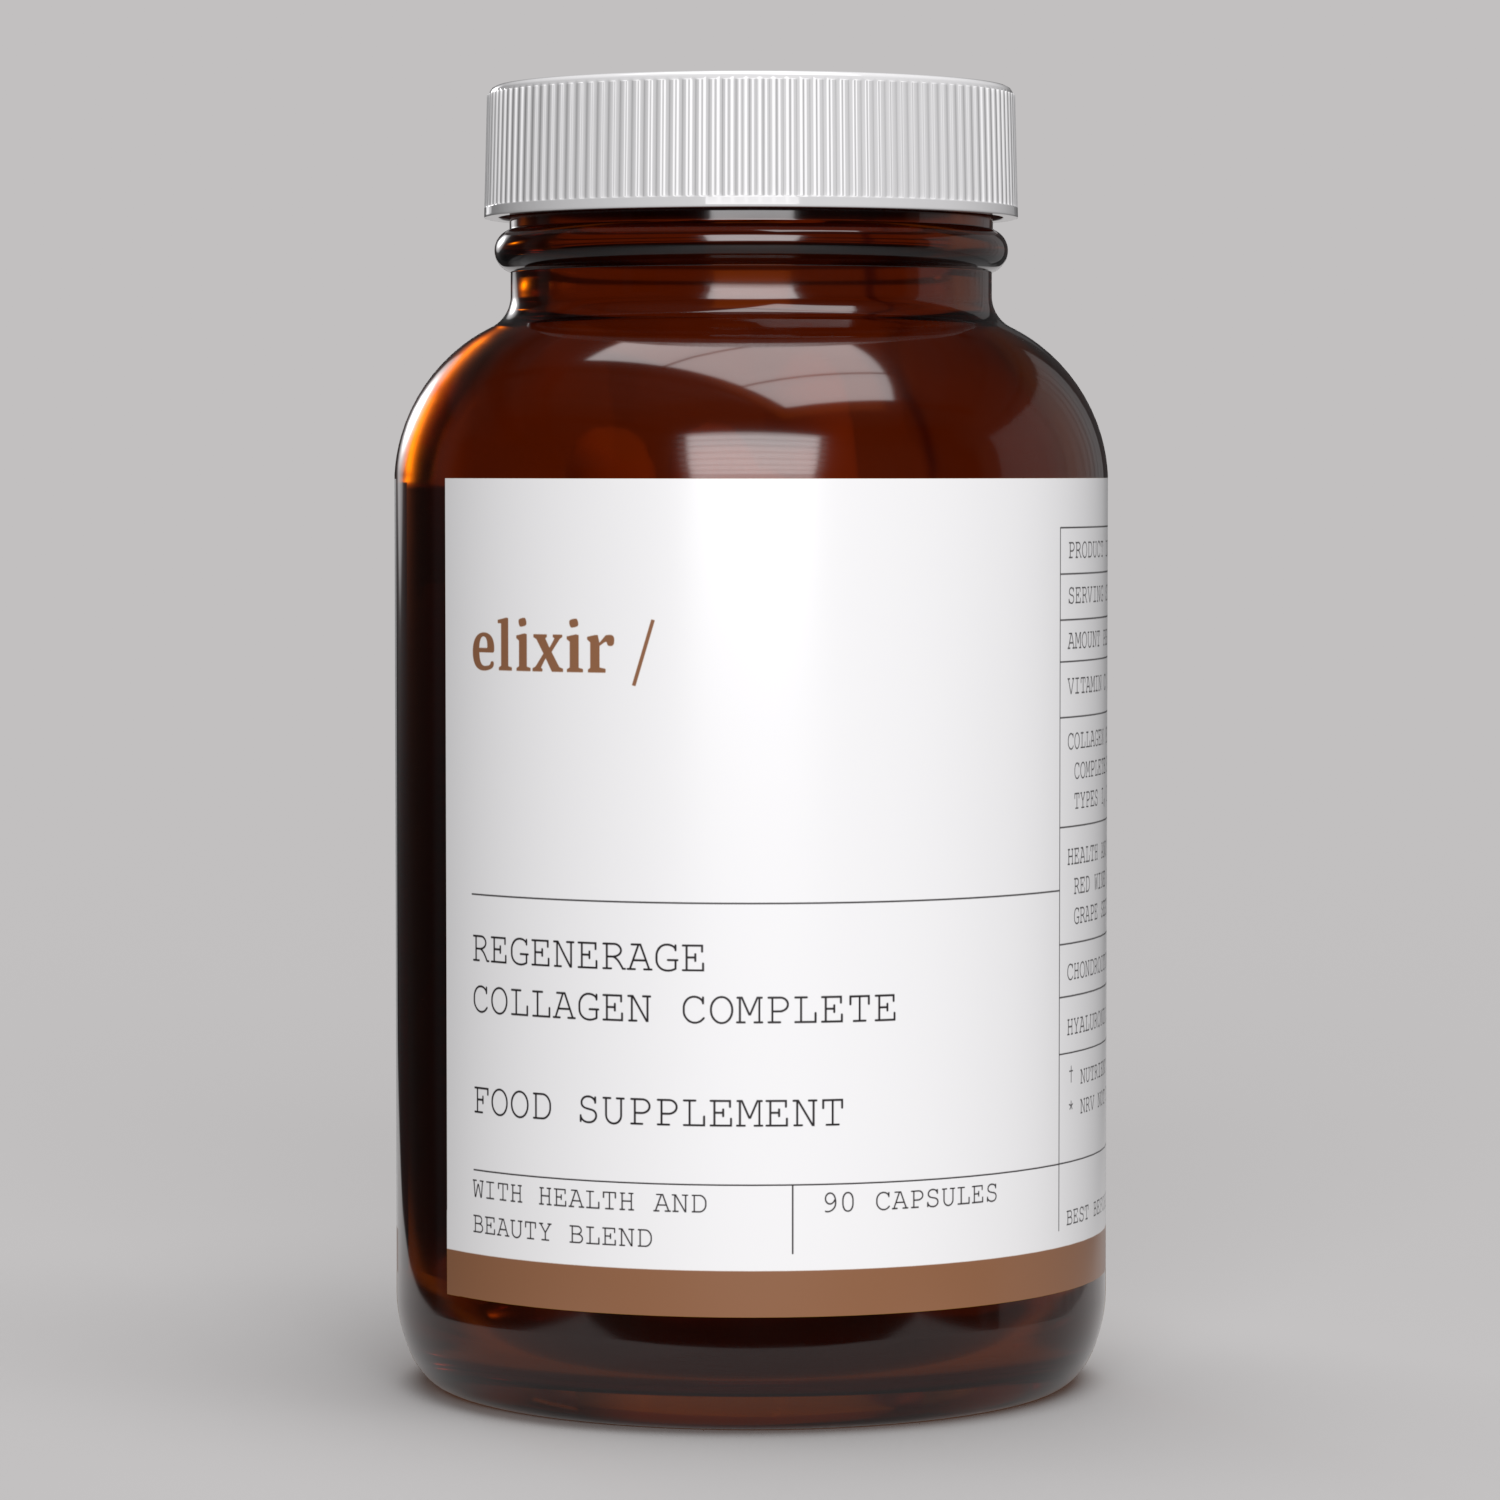 elixir/ Regenerage Collagen Complete 90 Capsules